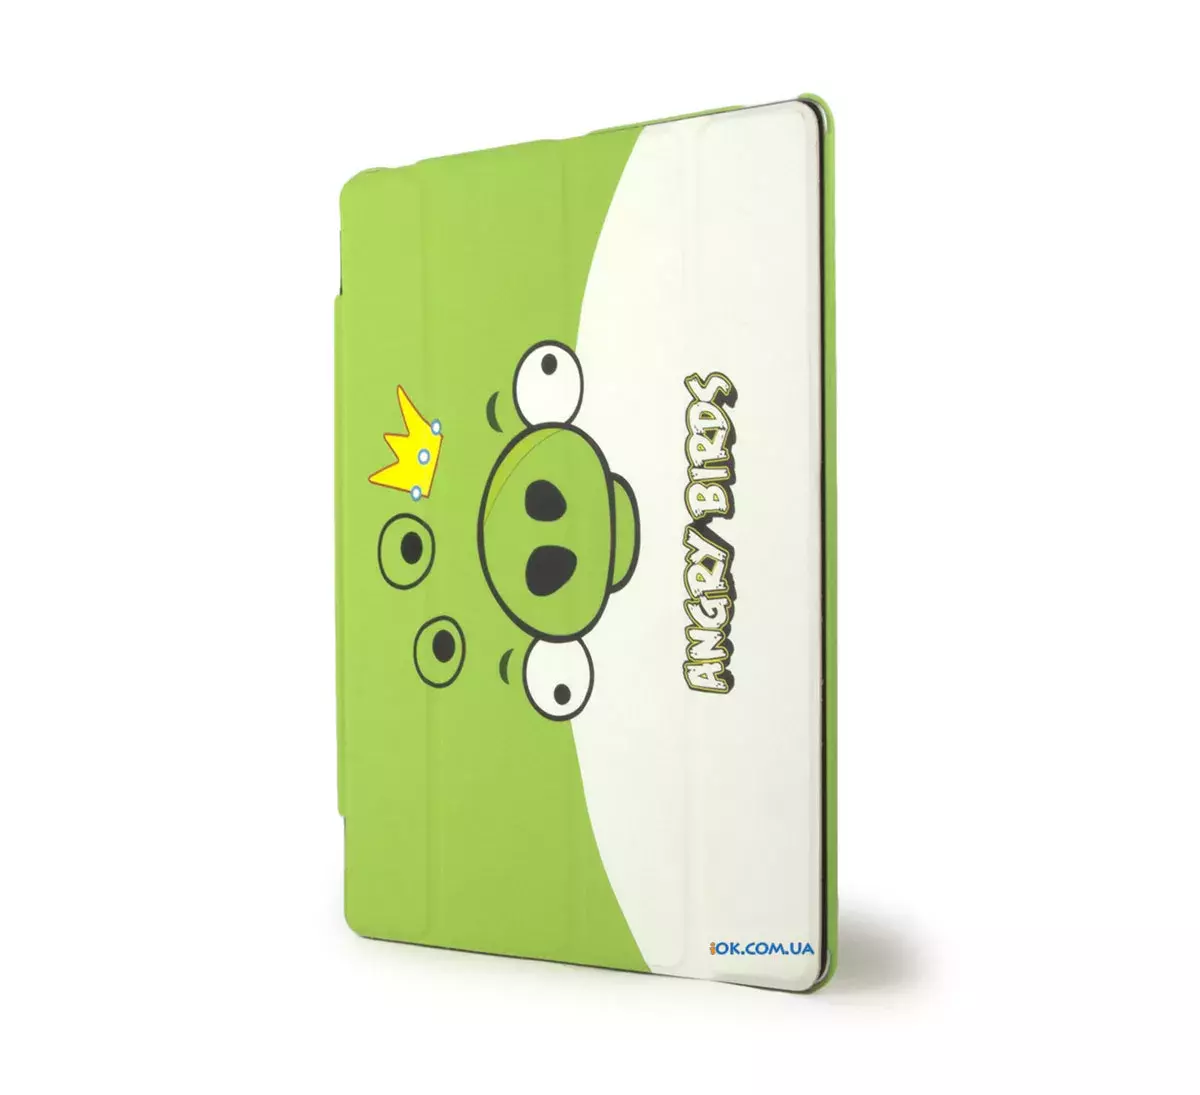 Обложка Smart Cover "Angry Birds" для iPad 2/3, зеленая